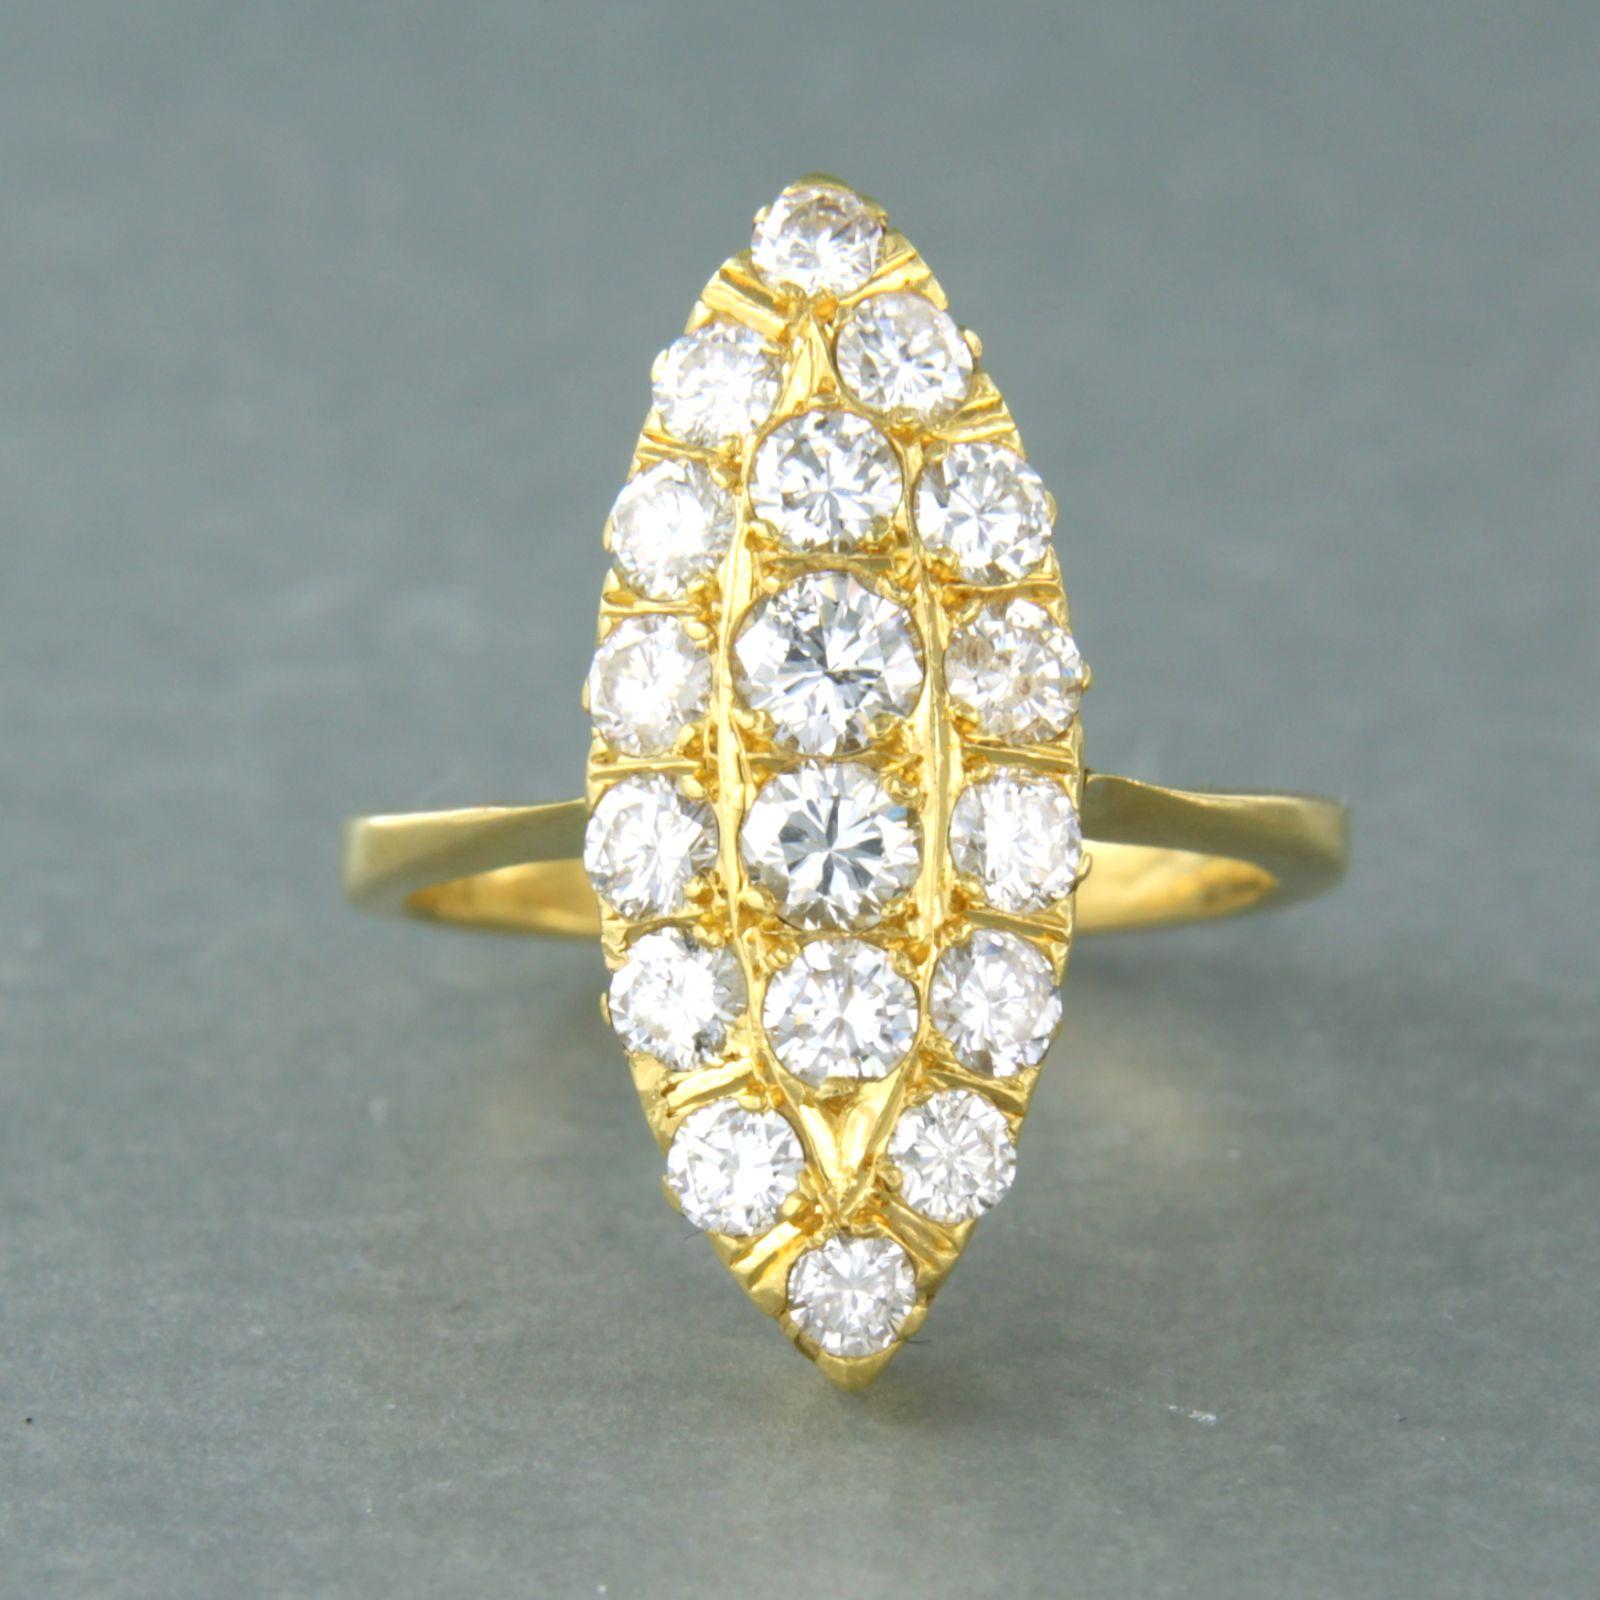 Ring aus 20 Karat Gelbgold mit Diamant im Brillantschliff. 1,35ct - H/I - SI/Pique - Ringgröße U.S. 6 - EU. 16.5(53)

Ausführliche Beschreibung

die Oberseite des Rings ist 2,2 cm breit und 5,9 mm hoch

Ringgröße US 6.5 - EU. 17(53), Ring kann